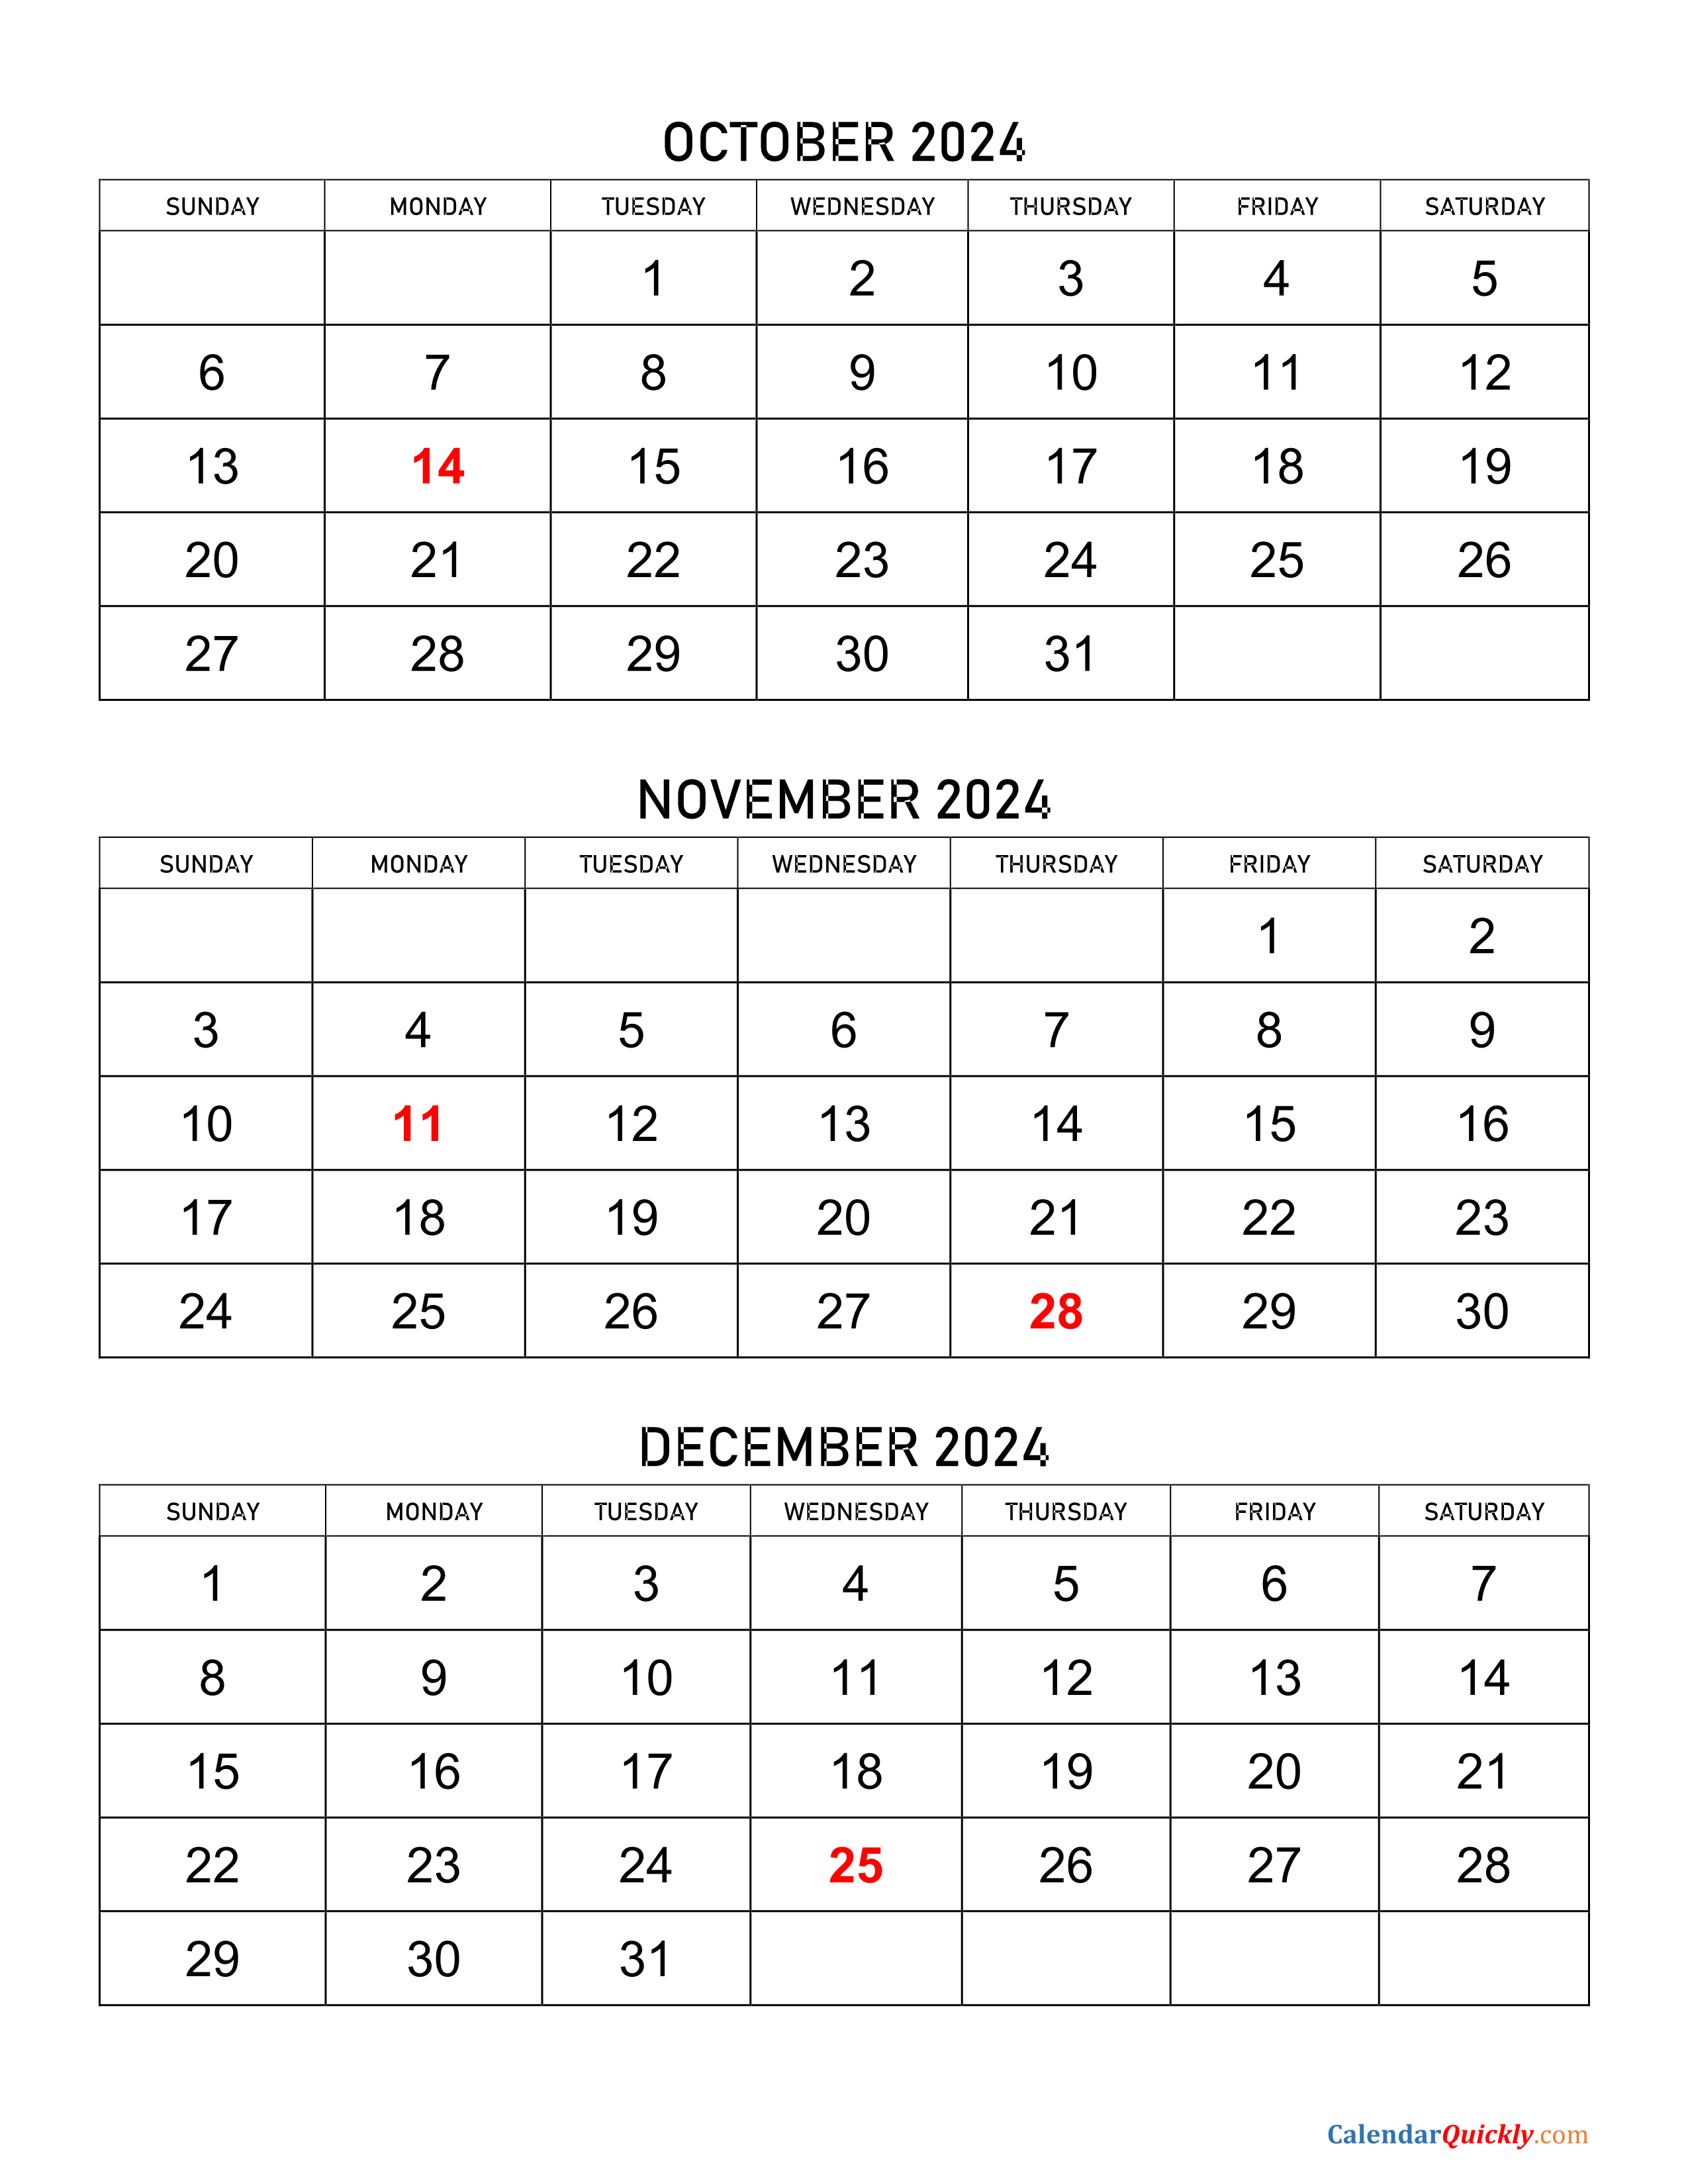 October to December 2024 Calendar Calendar Quickly